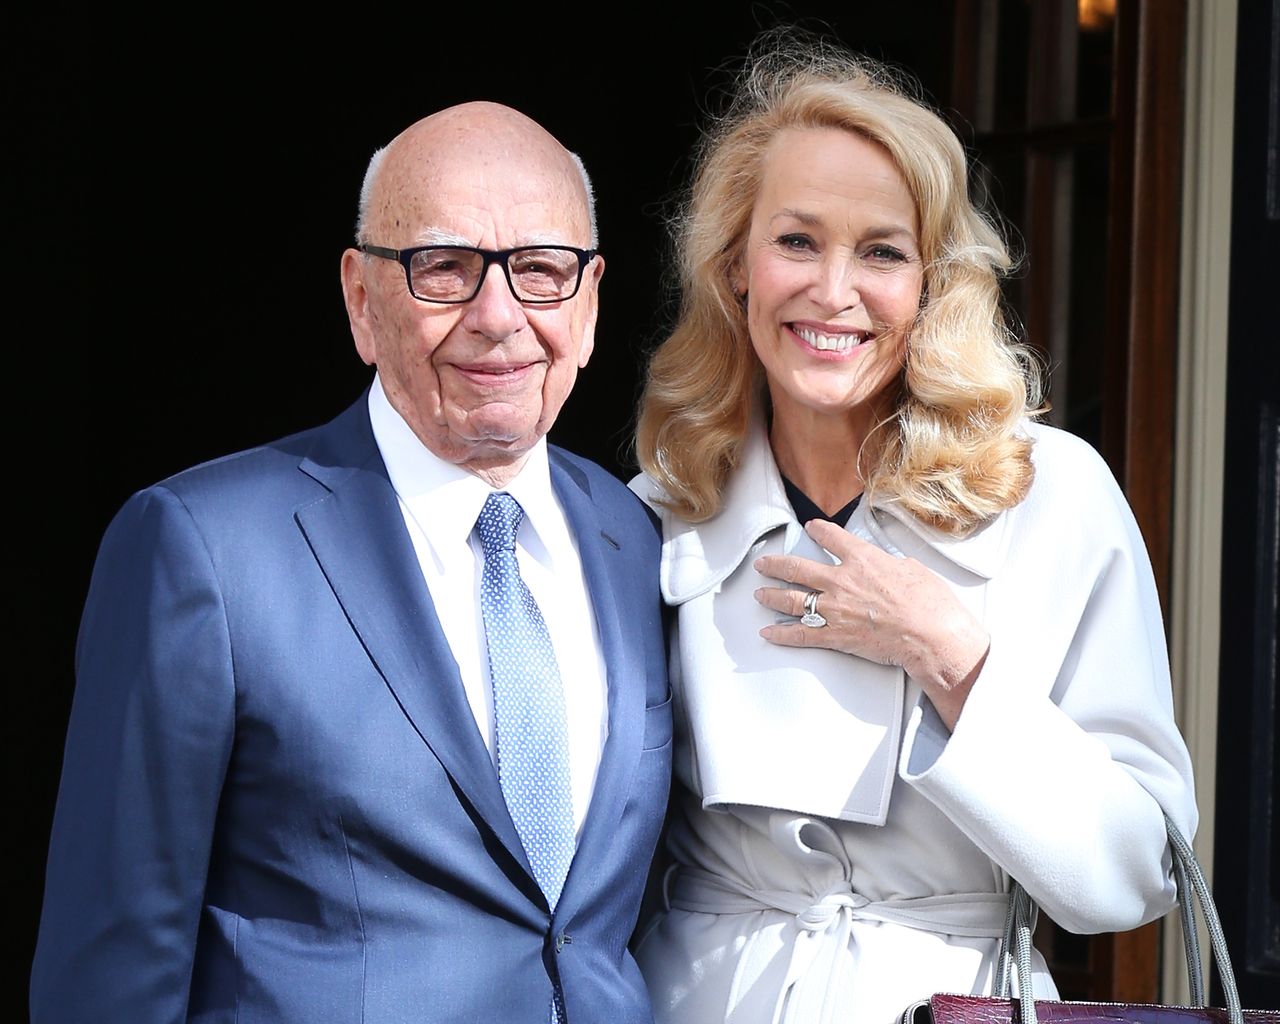 Ślub Ruperta Murdocha i Jerry Hall
